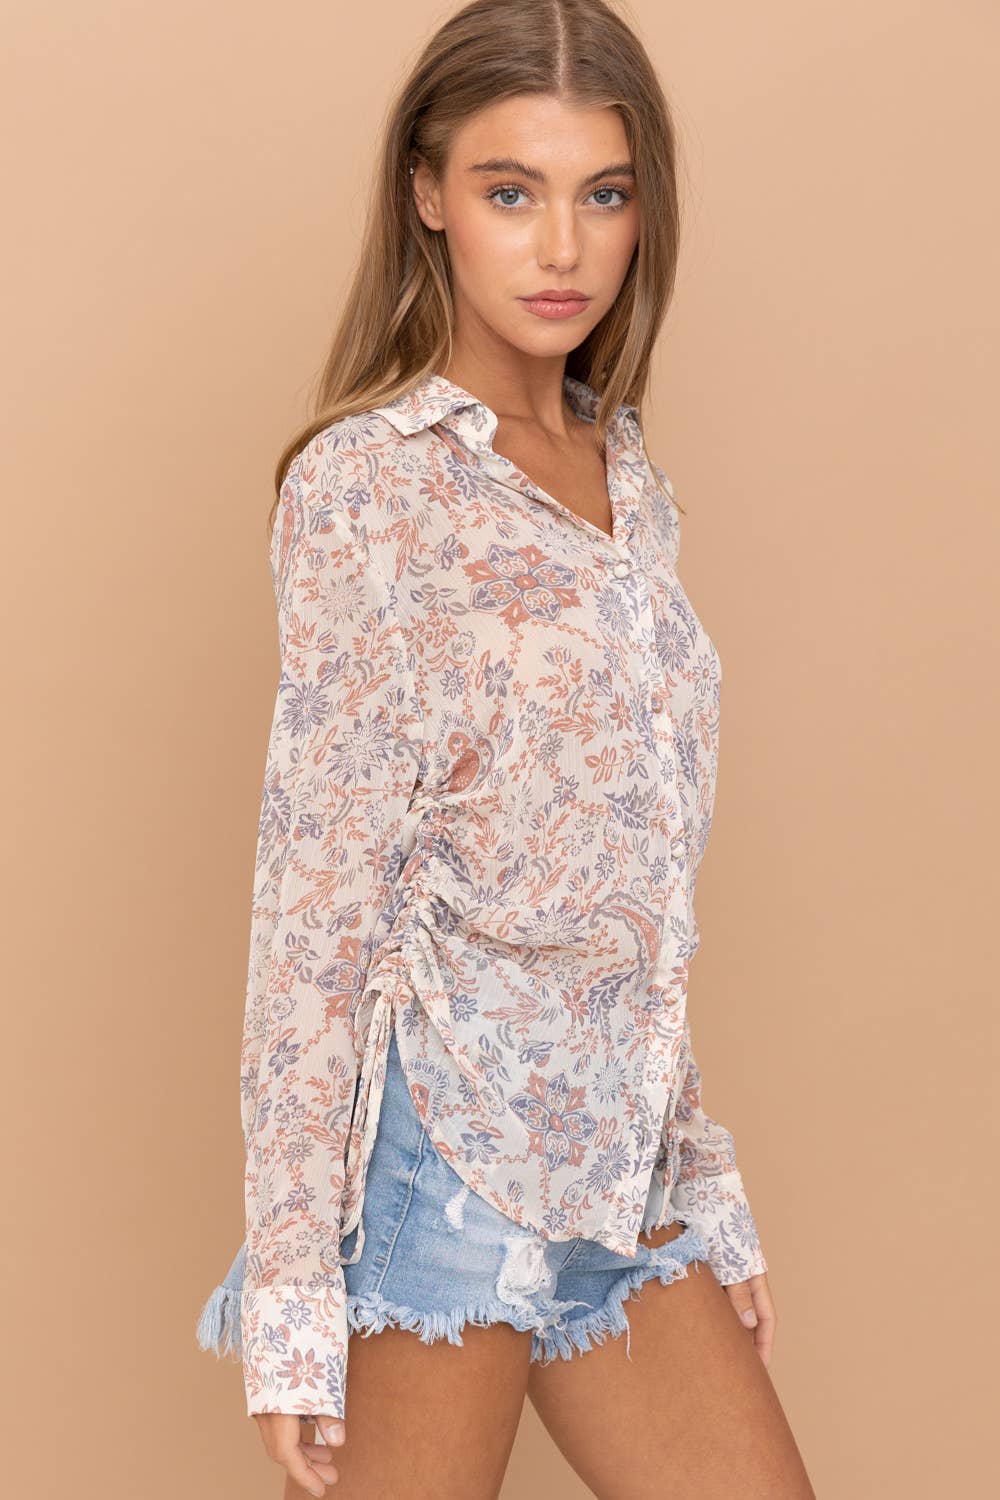 paisley chiffon blouse